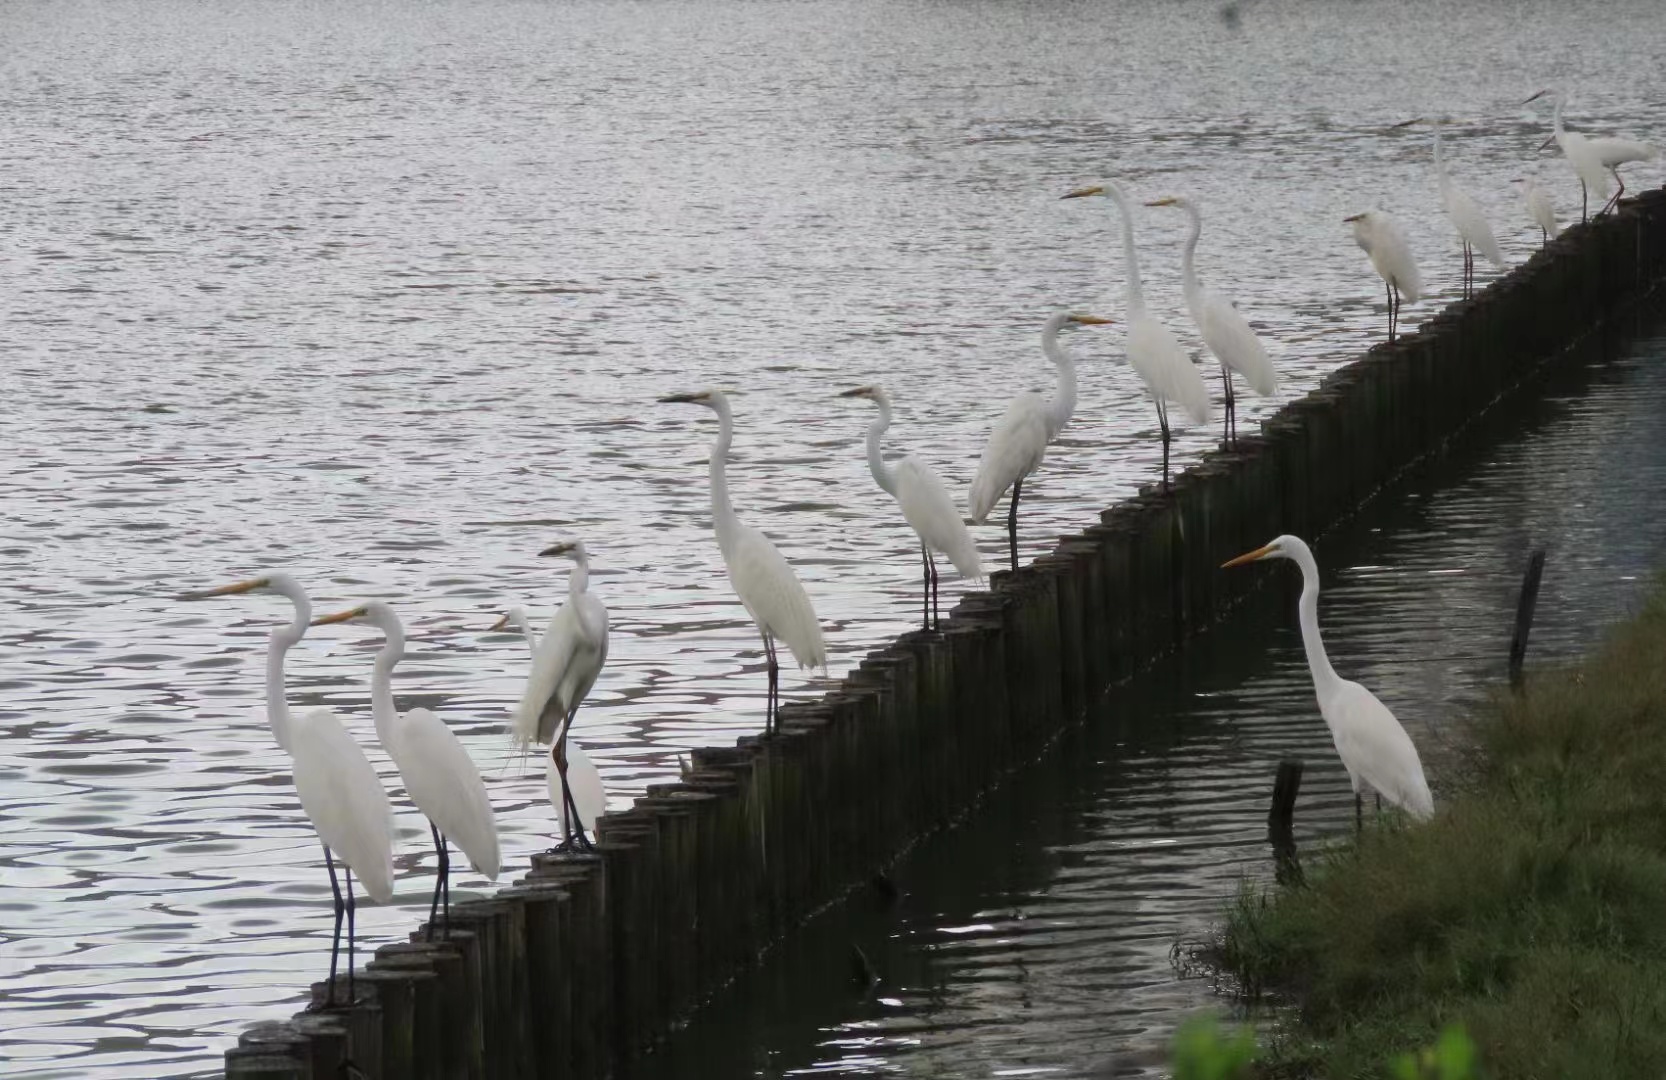 Egrets line up for food after spring rains